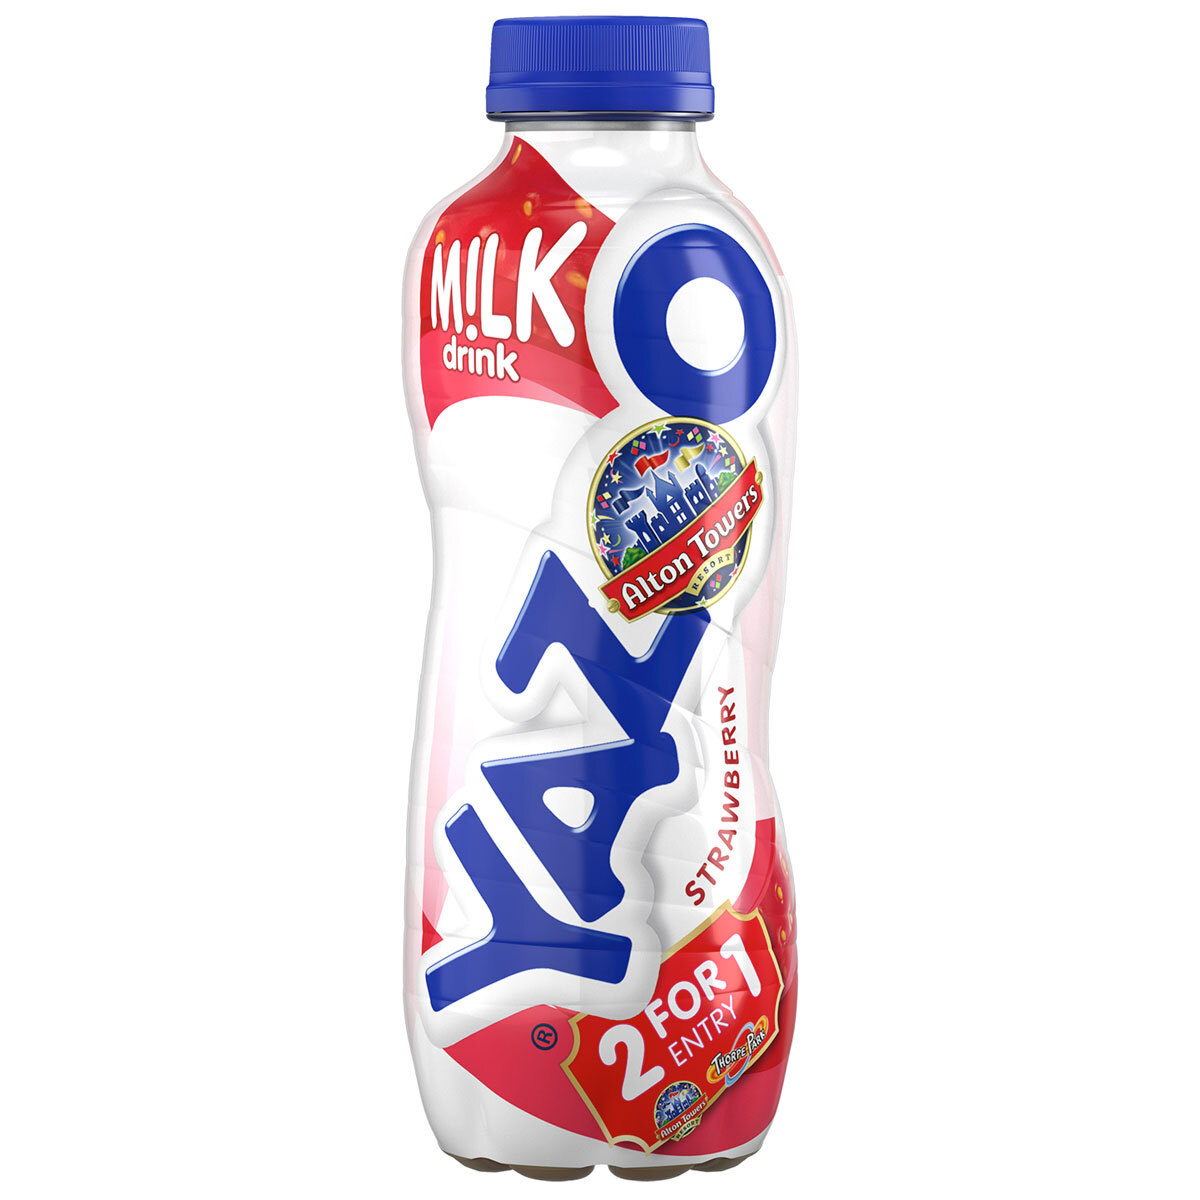 Yazoo Strawberry Milkshake, 10 x 400ml